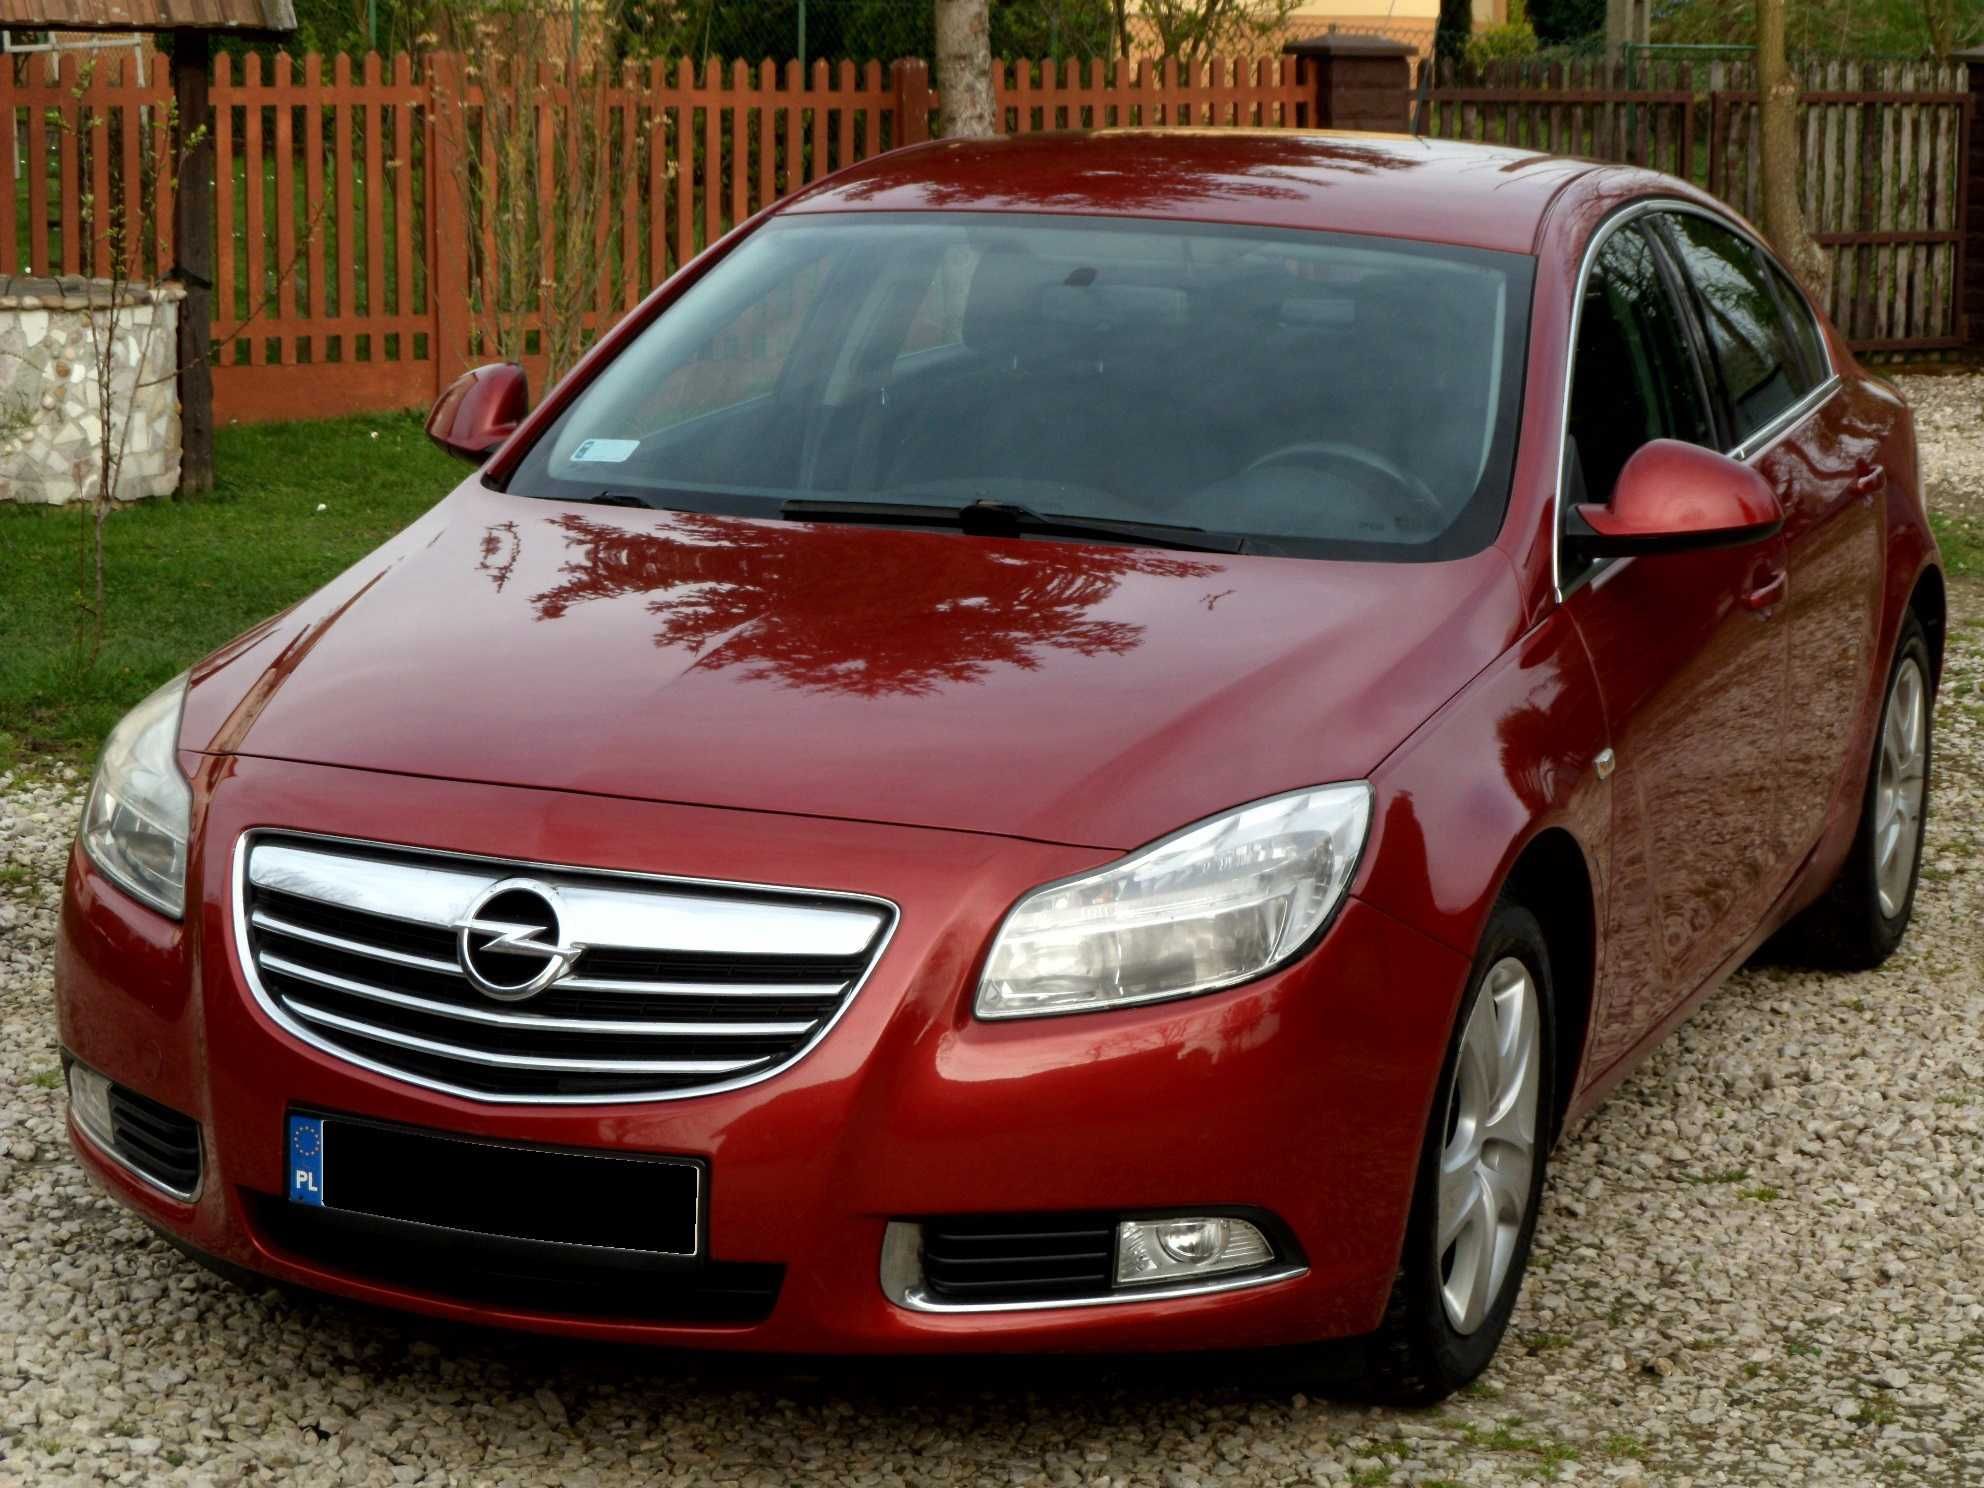 Opel Insignia 2.0 CDTI - 130KM, 2009r., 6 biegów